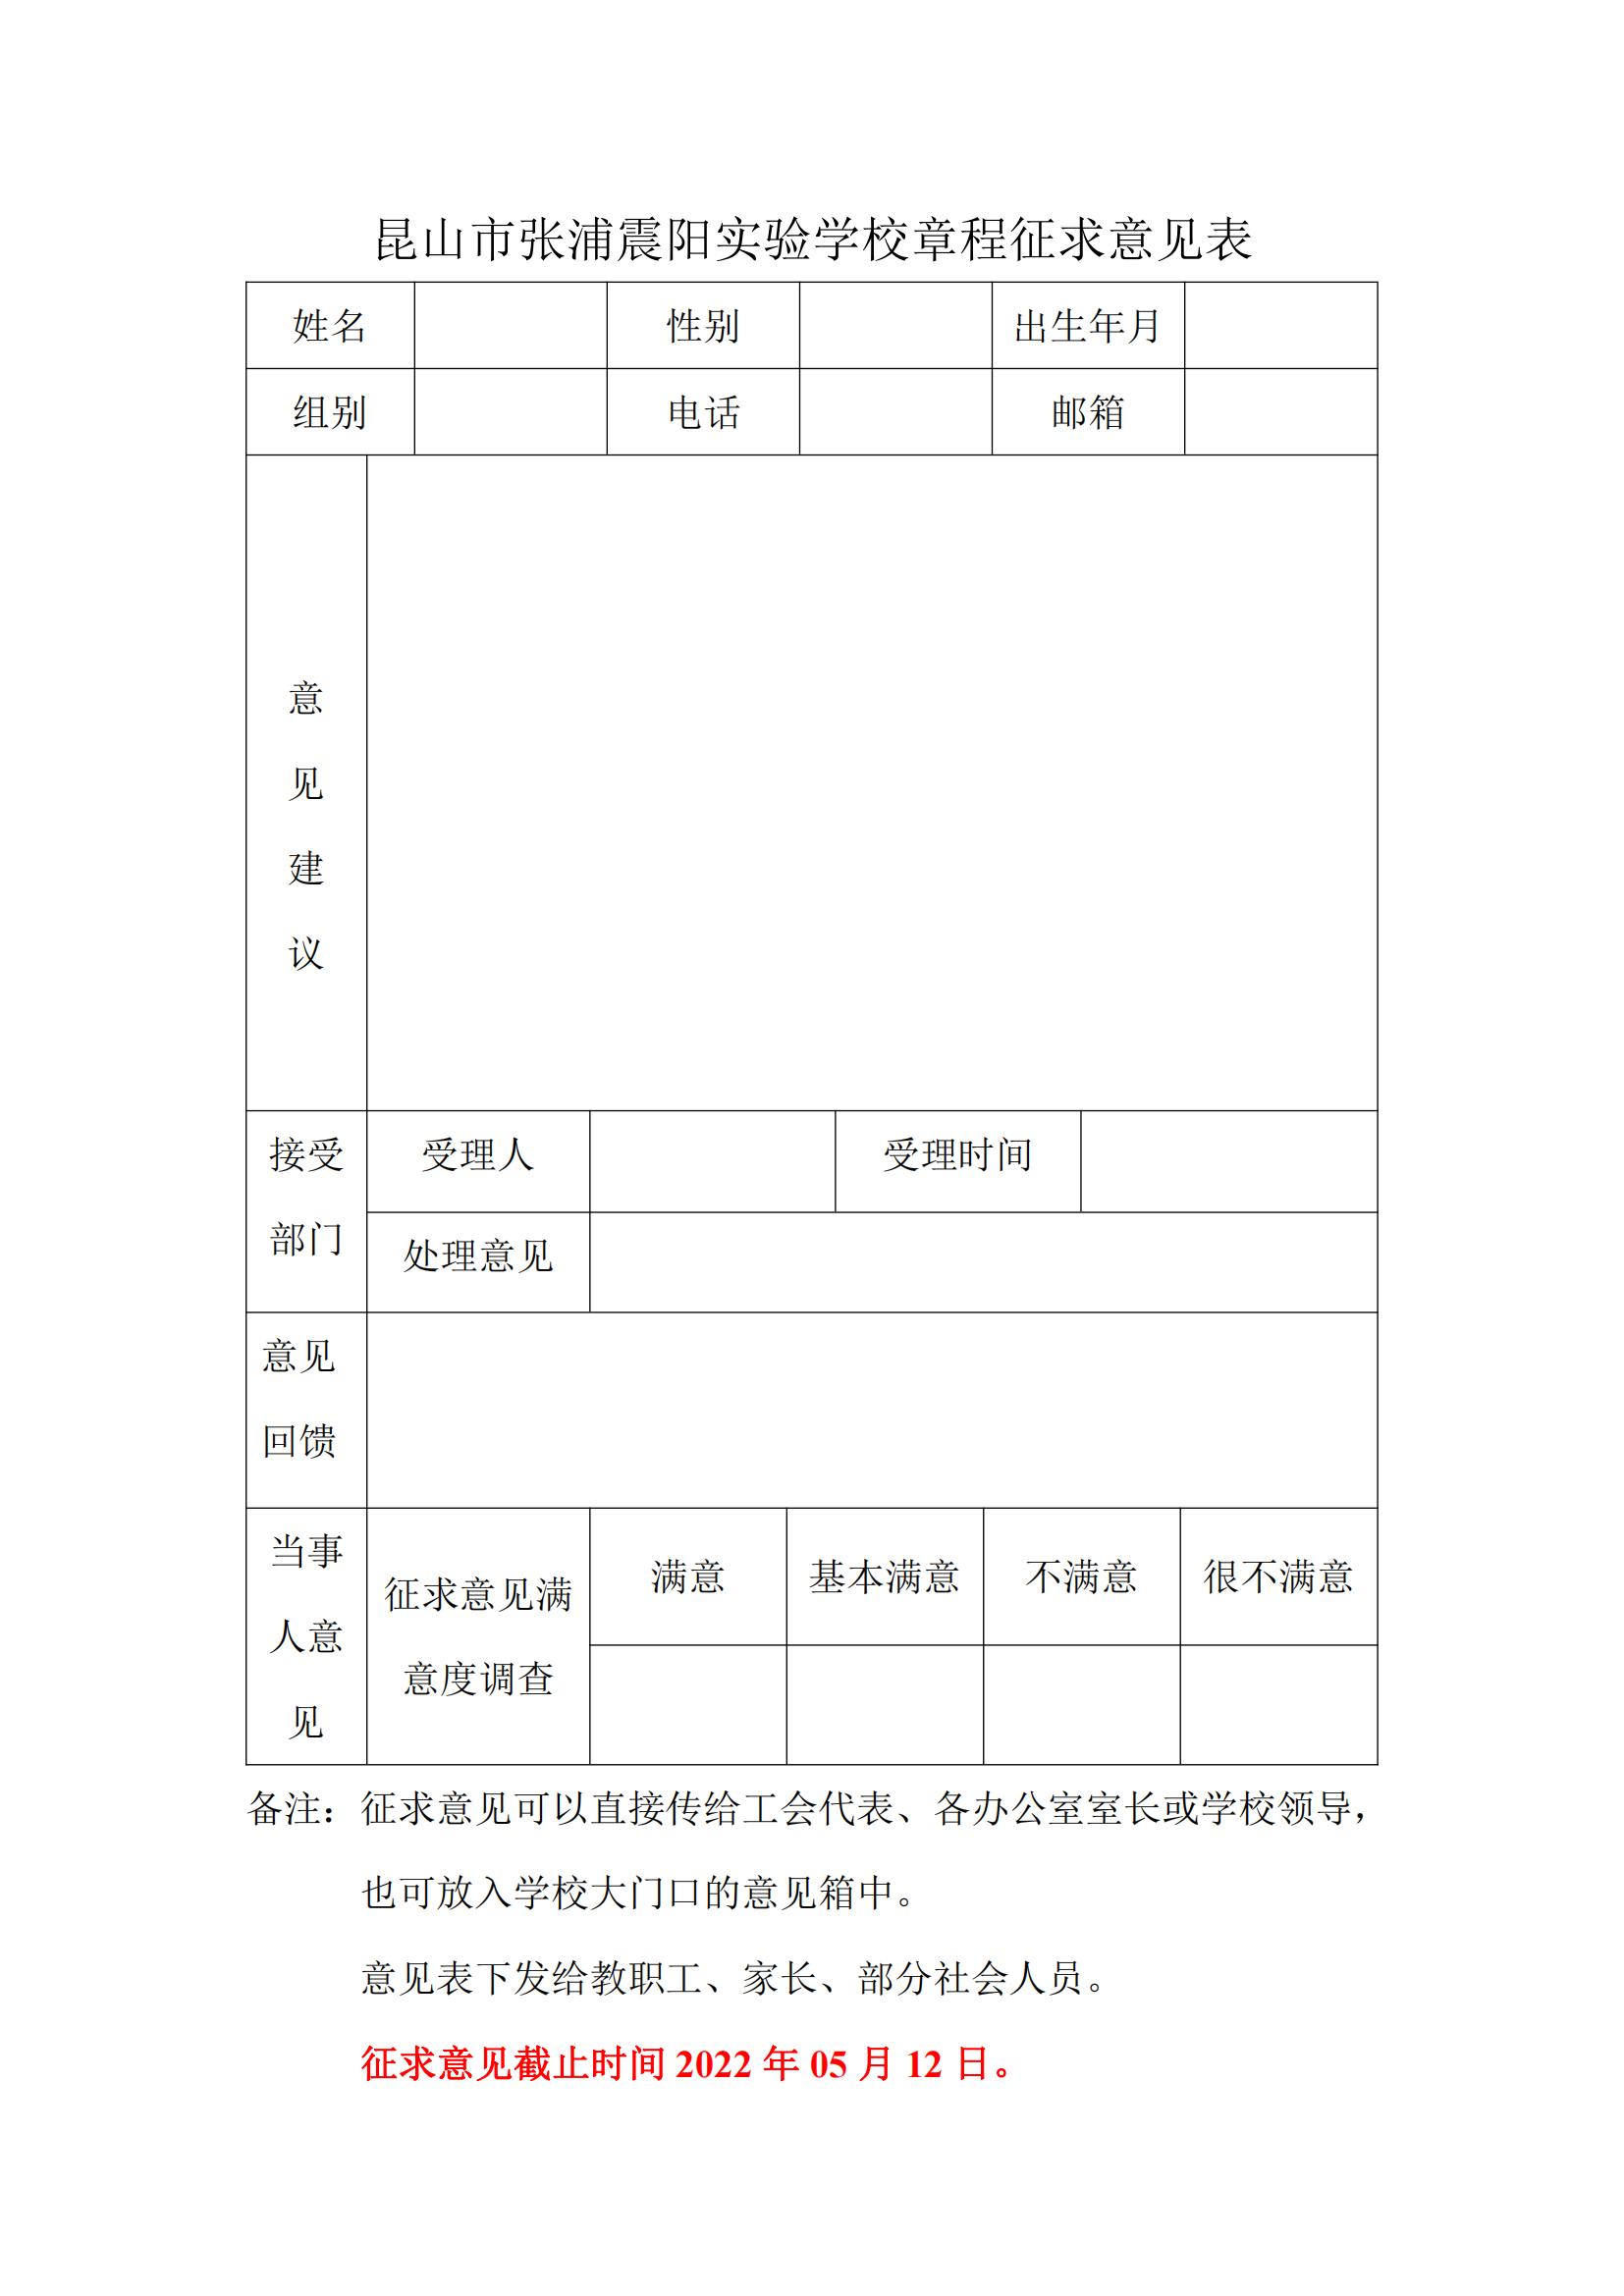 昆山市张浦震阳实验学校章程征求意见表_00.jpg